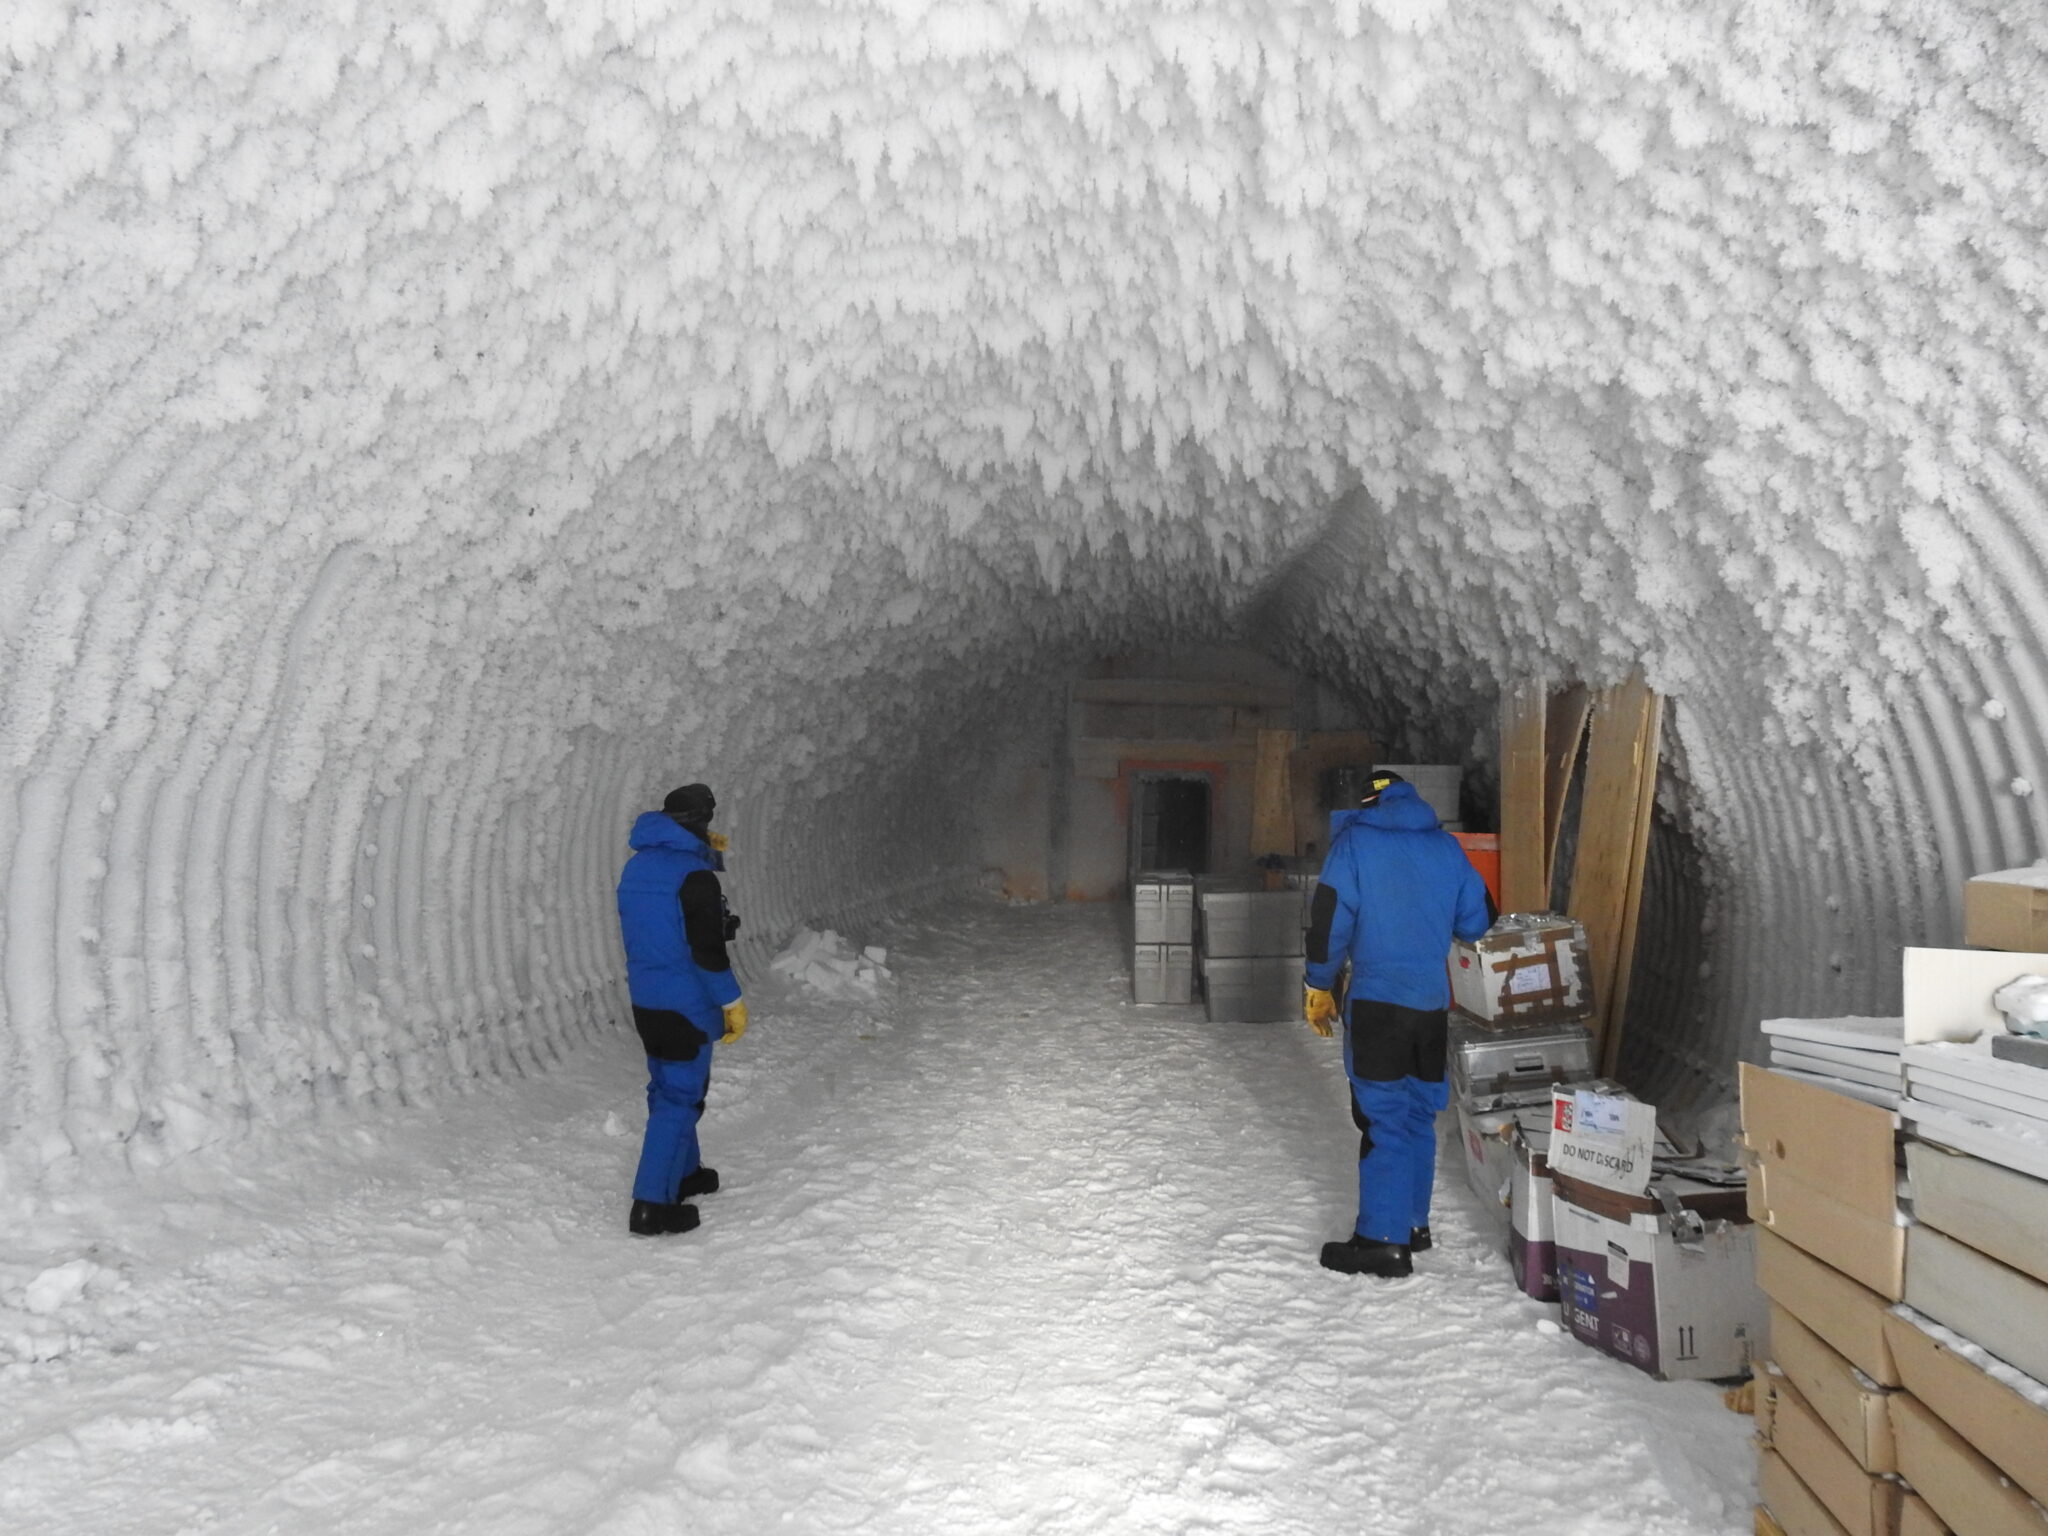 Les carottes de glace sont stockées dans cette cave creusée dans la glace en Antarctique (qui fait office de congélateur naturel).